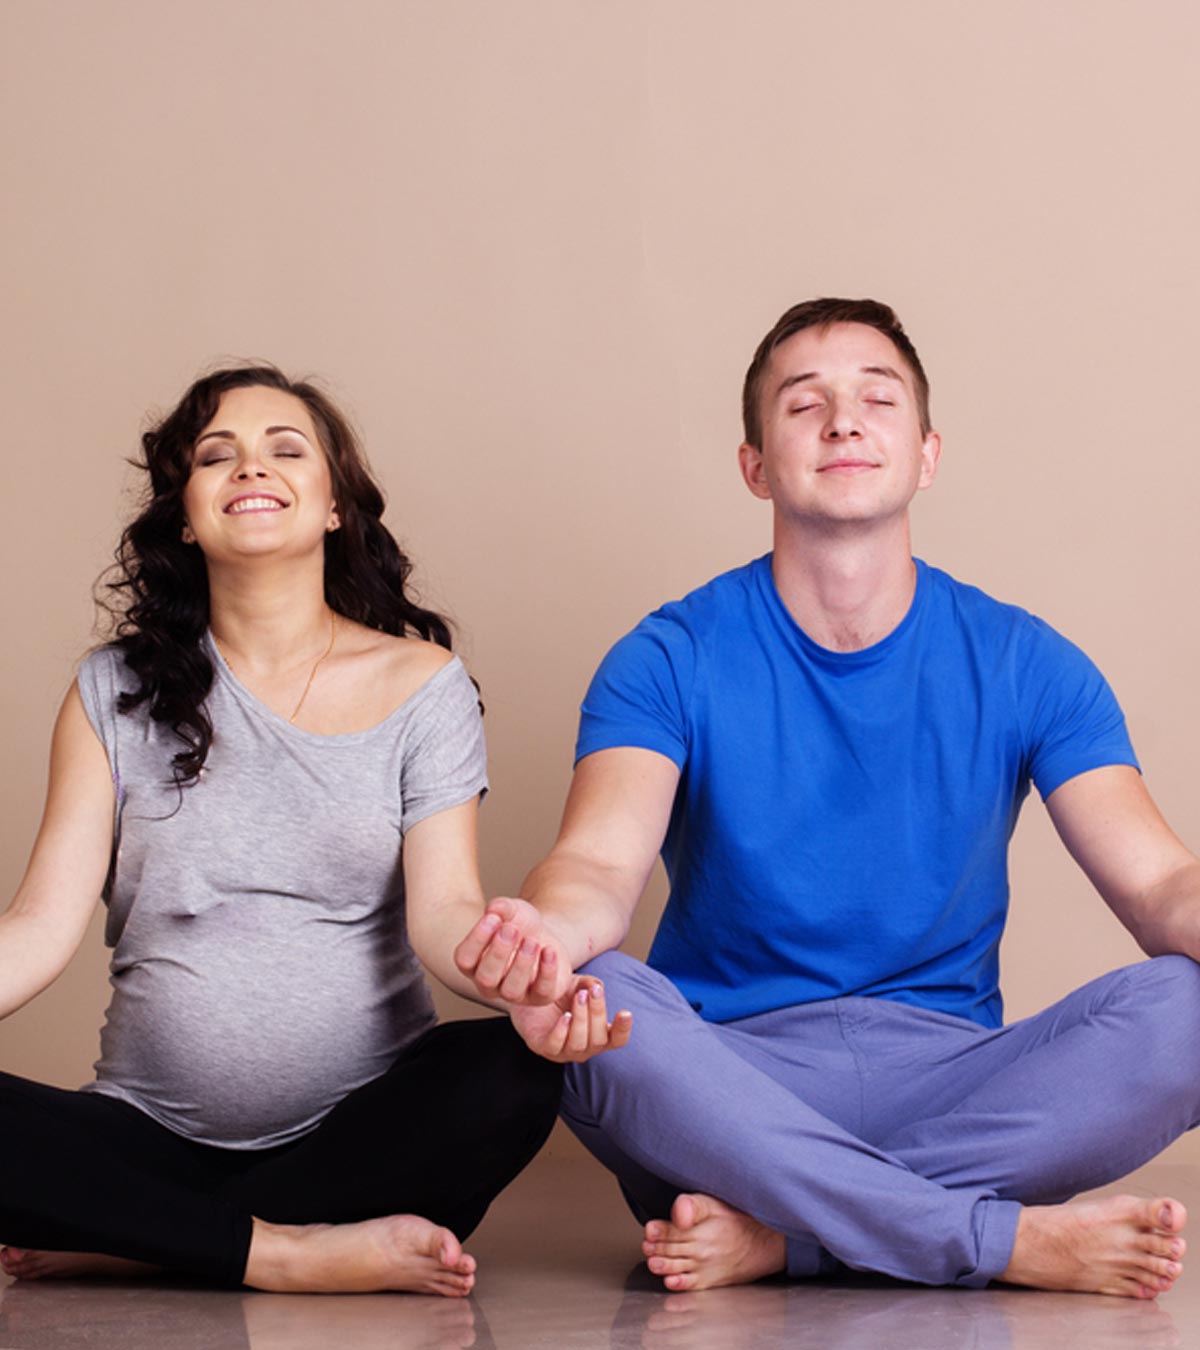 男人在怀孕后期的感受:还是不真实吗?